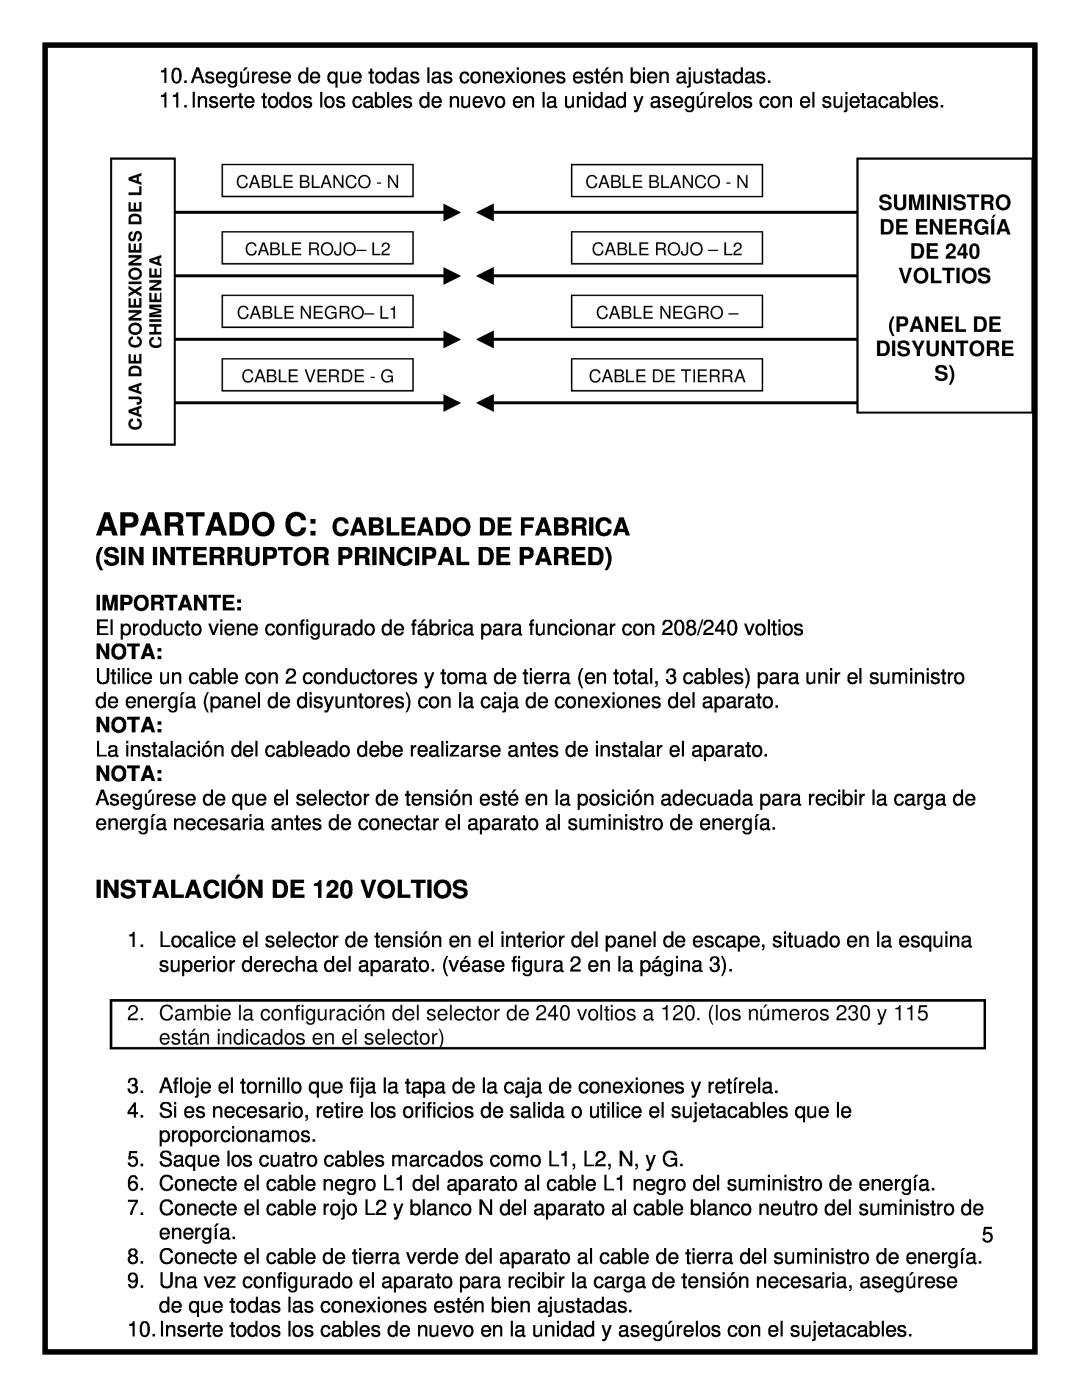 Dimplex BF45ST/DX manual INSTALACIÓN DE 120 VOLTIOS, Panel De Disyuntore S, Importante, Nota 